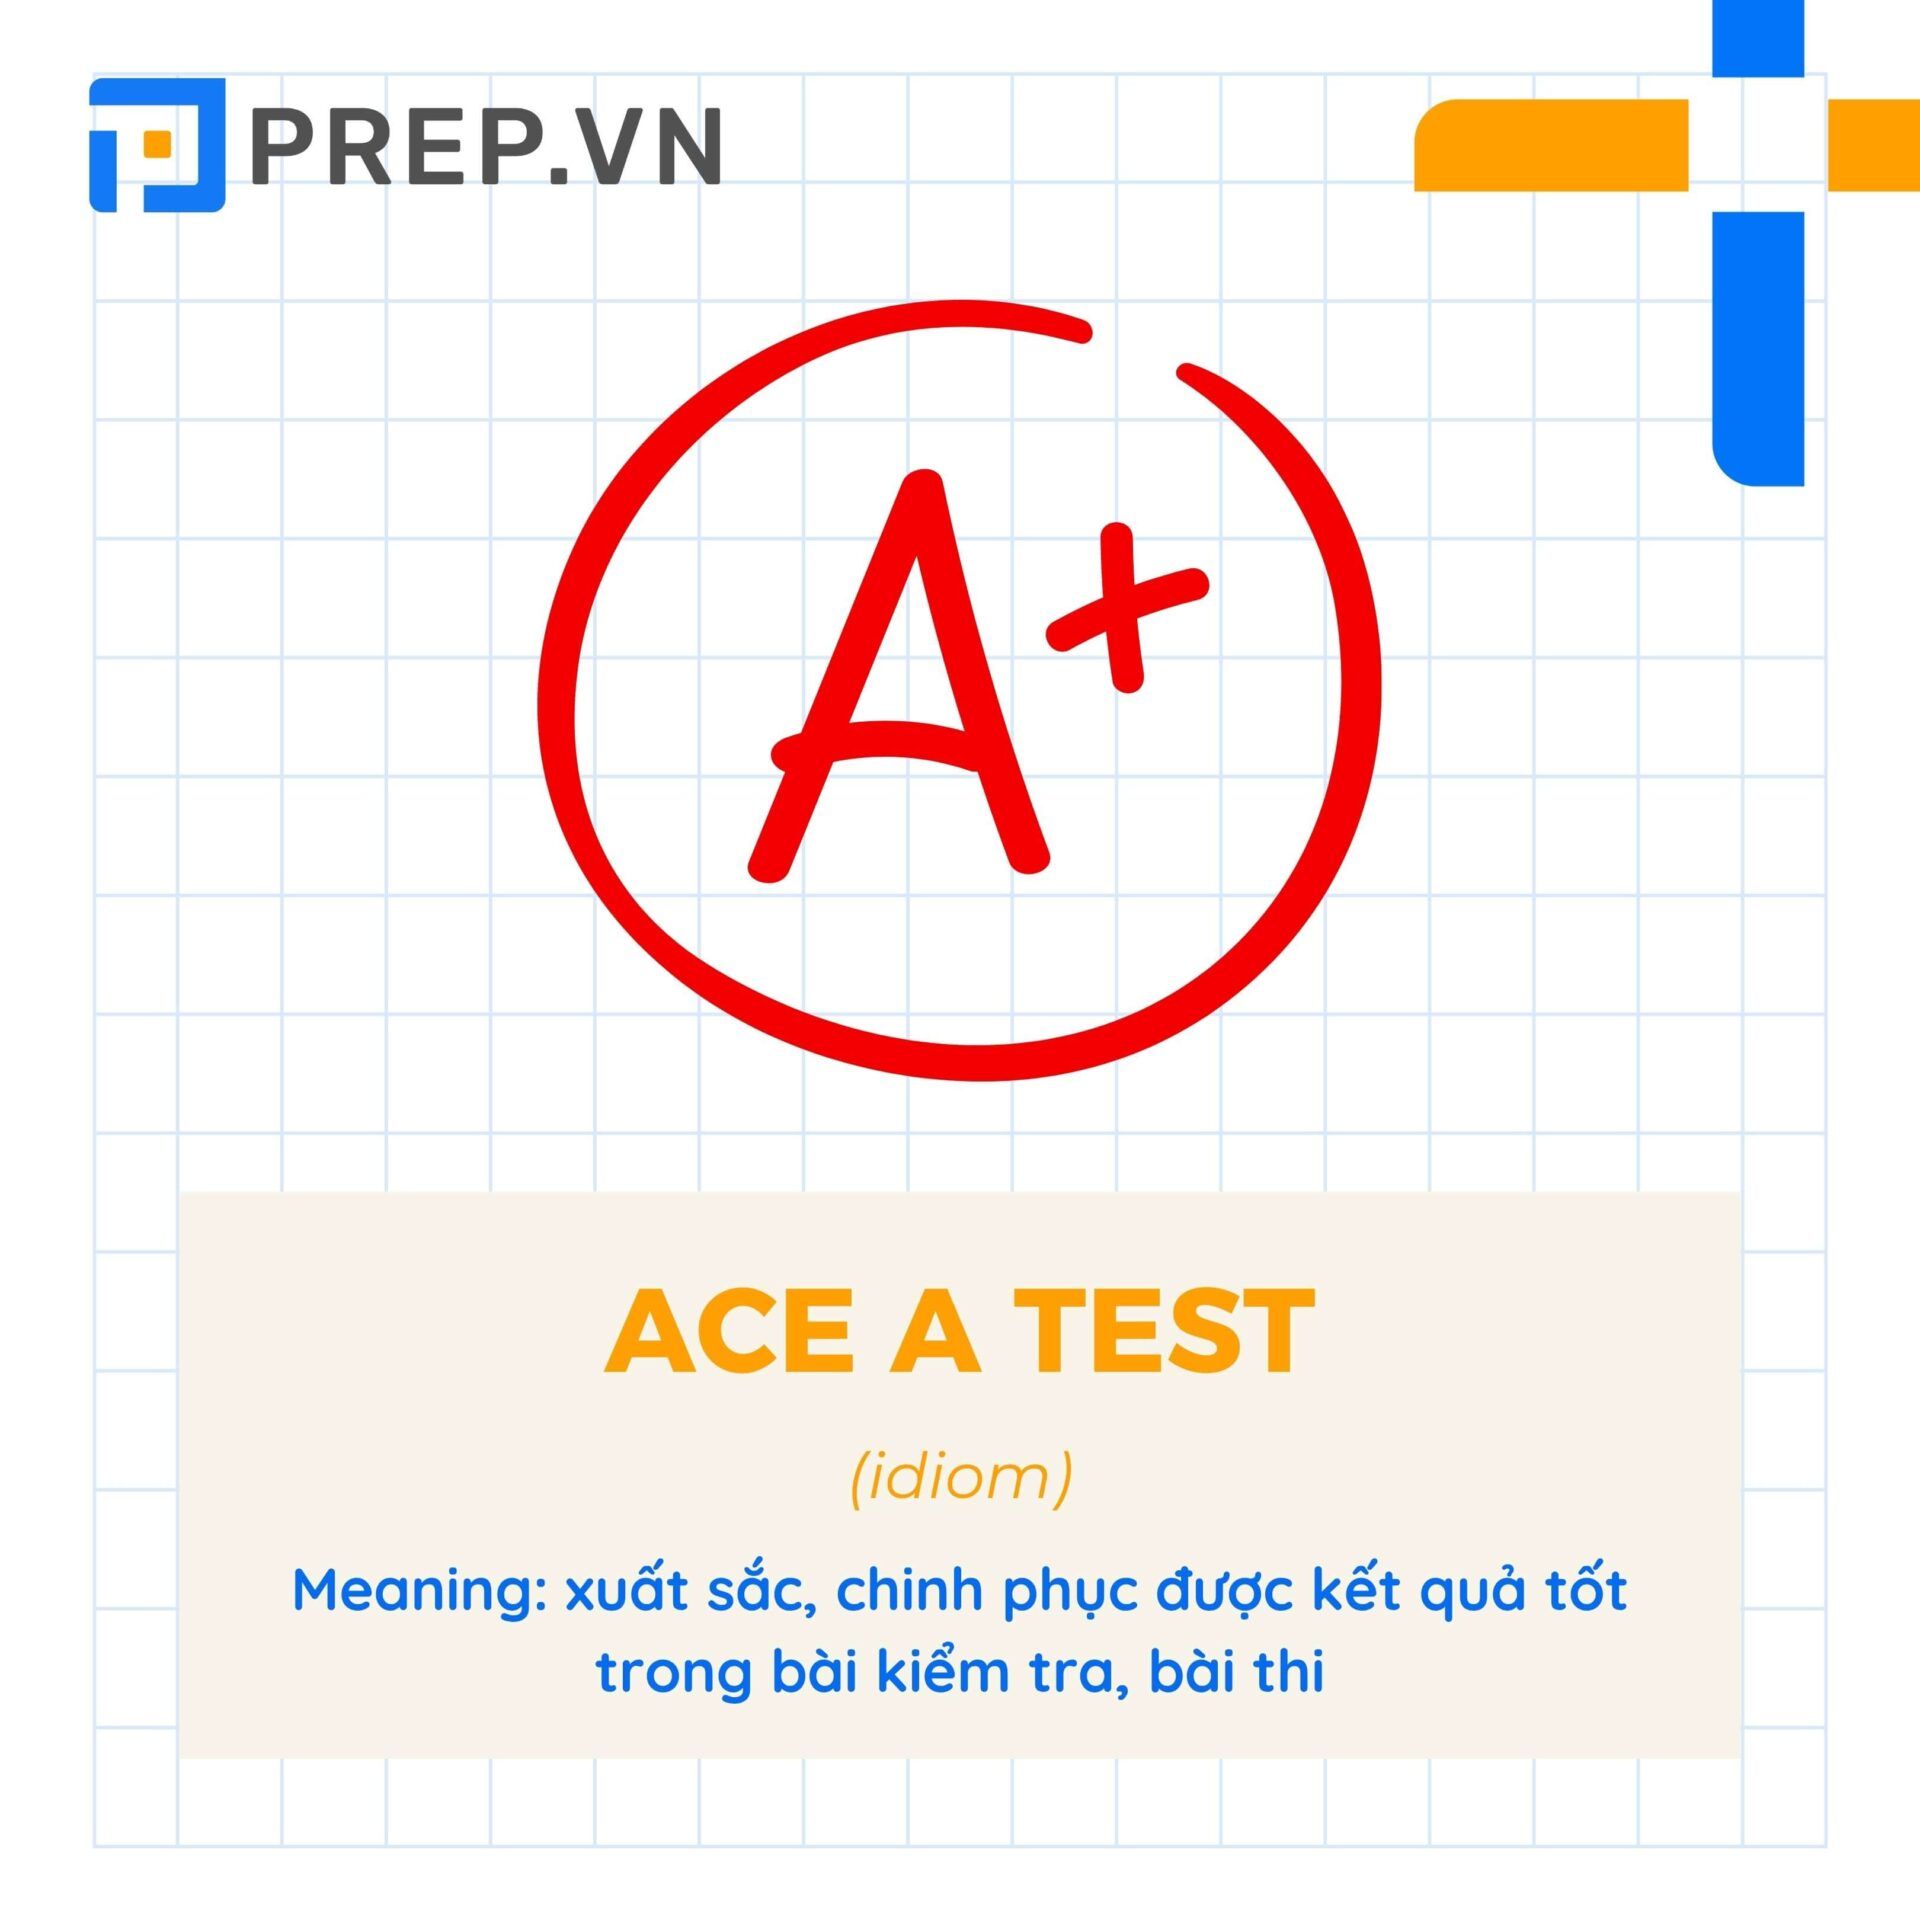 Thành ngữ "Ace a test"